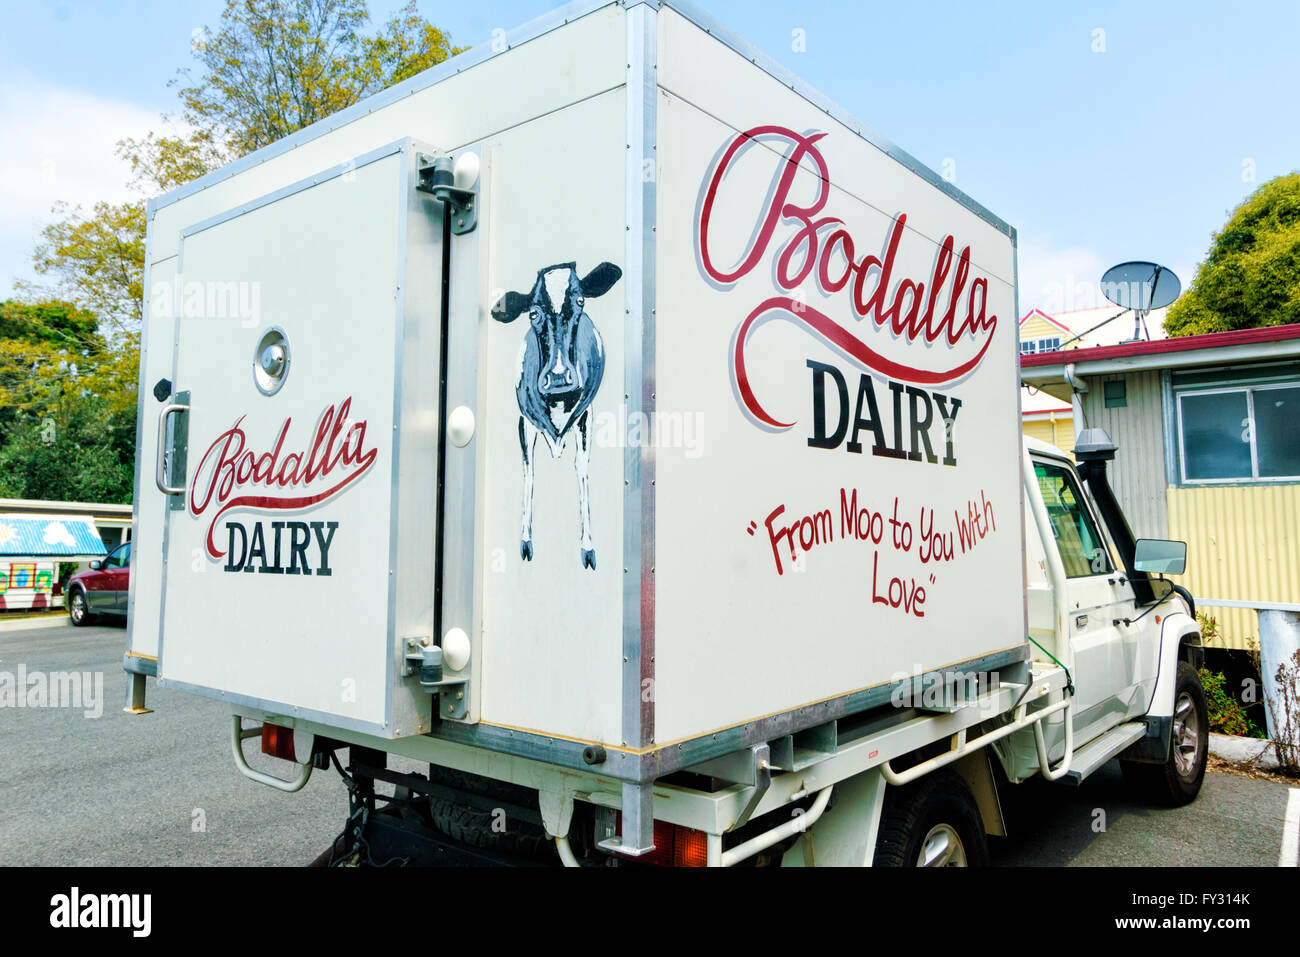 Lustige Slogan auf der Bodalla Molkerei Delivery Van, New-South.Wales, Australien Stockfoto